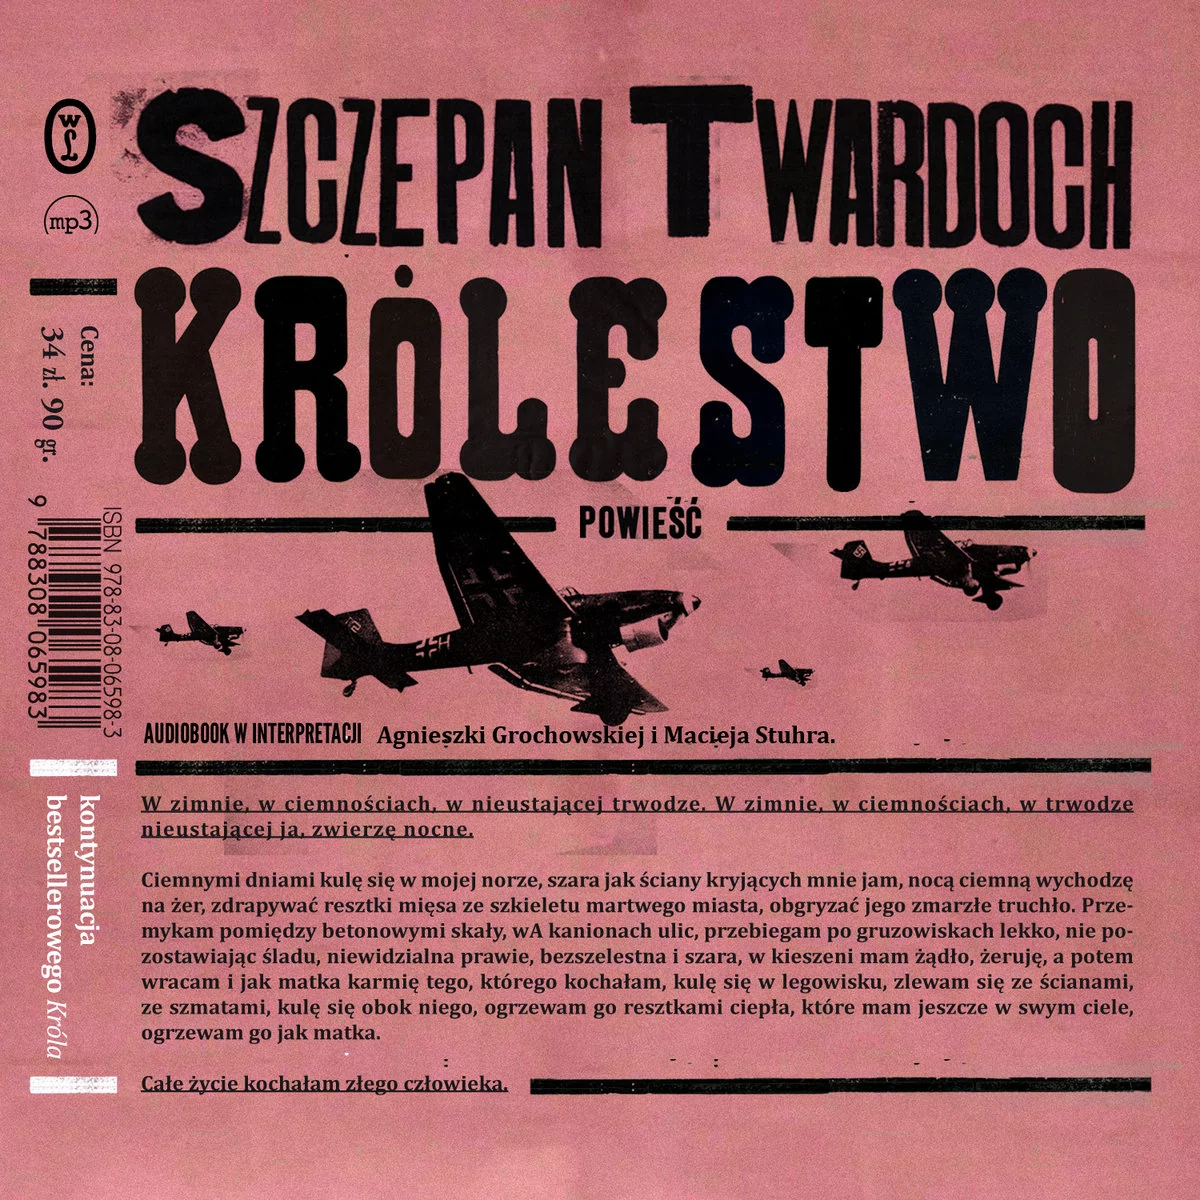 Wydawnictwo Literackie Królestwo Audiobook Szczepan Twardoch